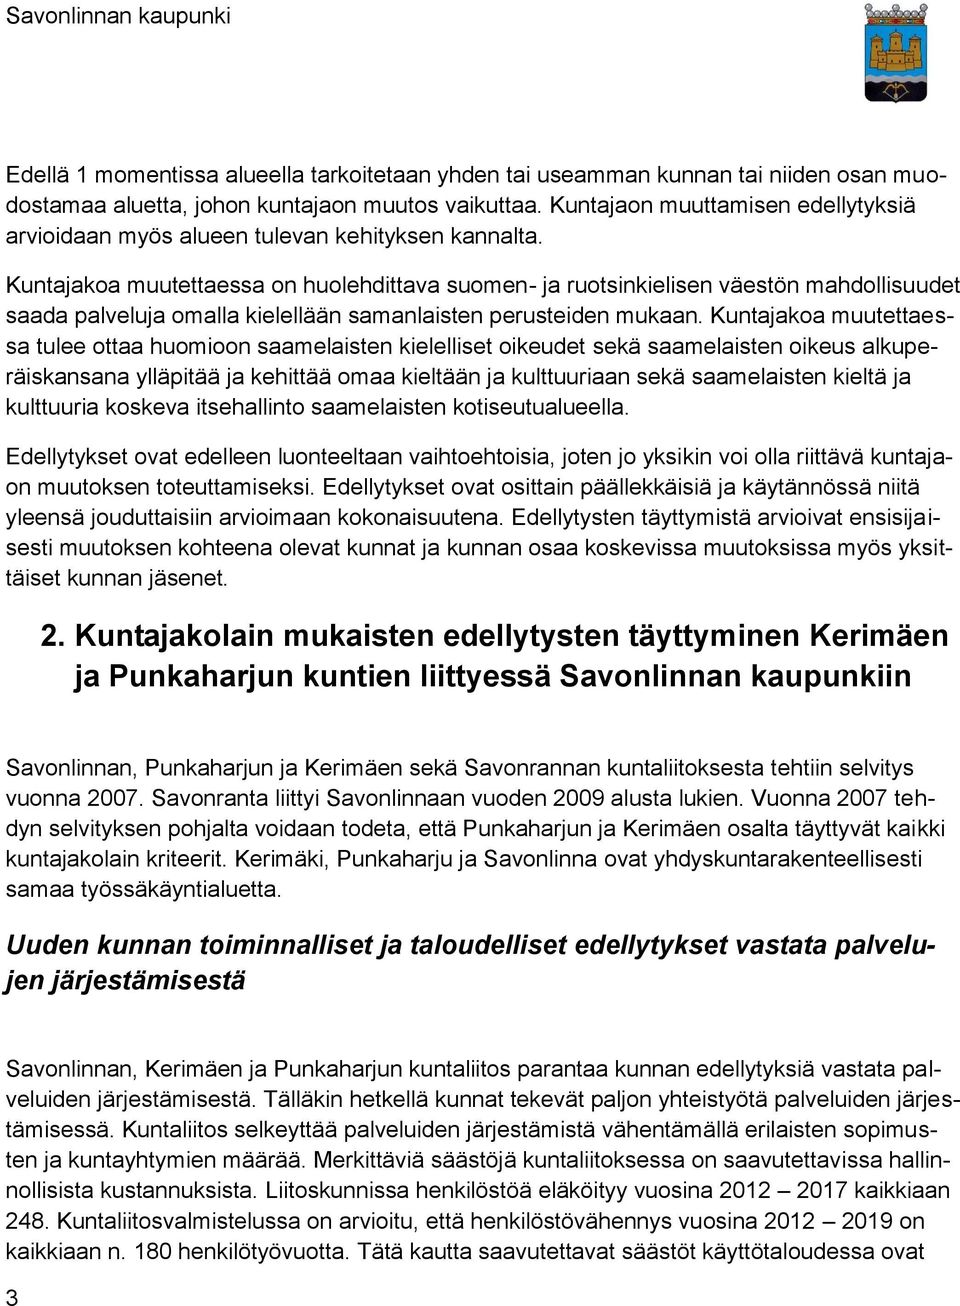 Kuntajakoa muutettaessa on huolehdittava suomen- ja ruotsinkielisen väestön mahdollisuudet saada palveluja omalla kielellään samanlaisten perusteiden mukaan.